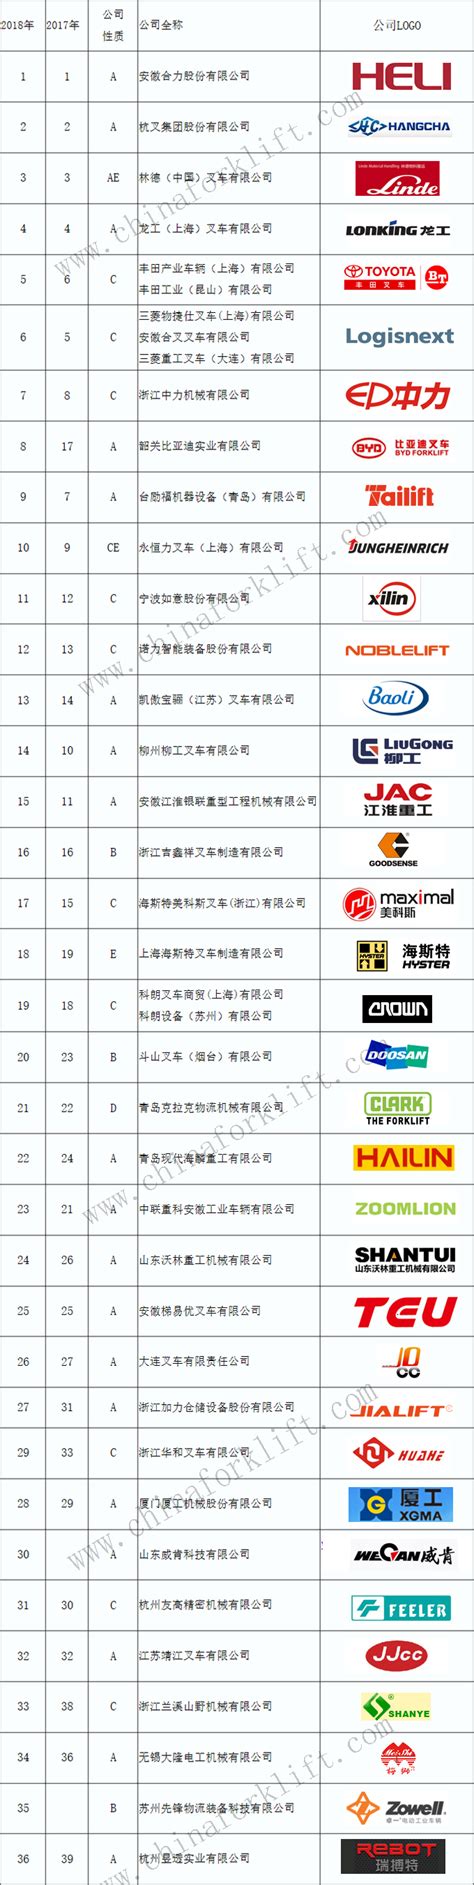 中国叉车网2016年排名